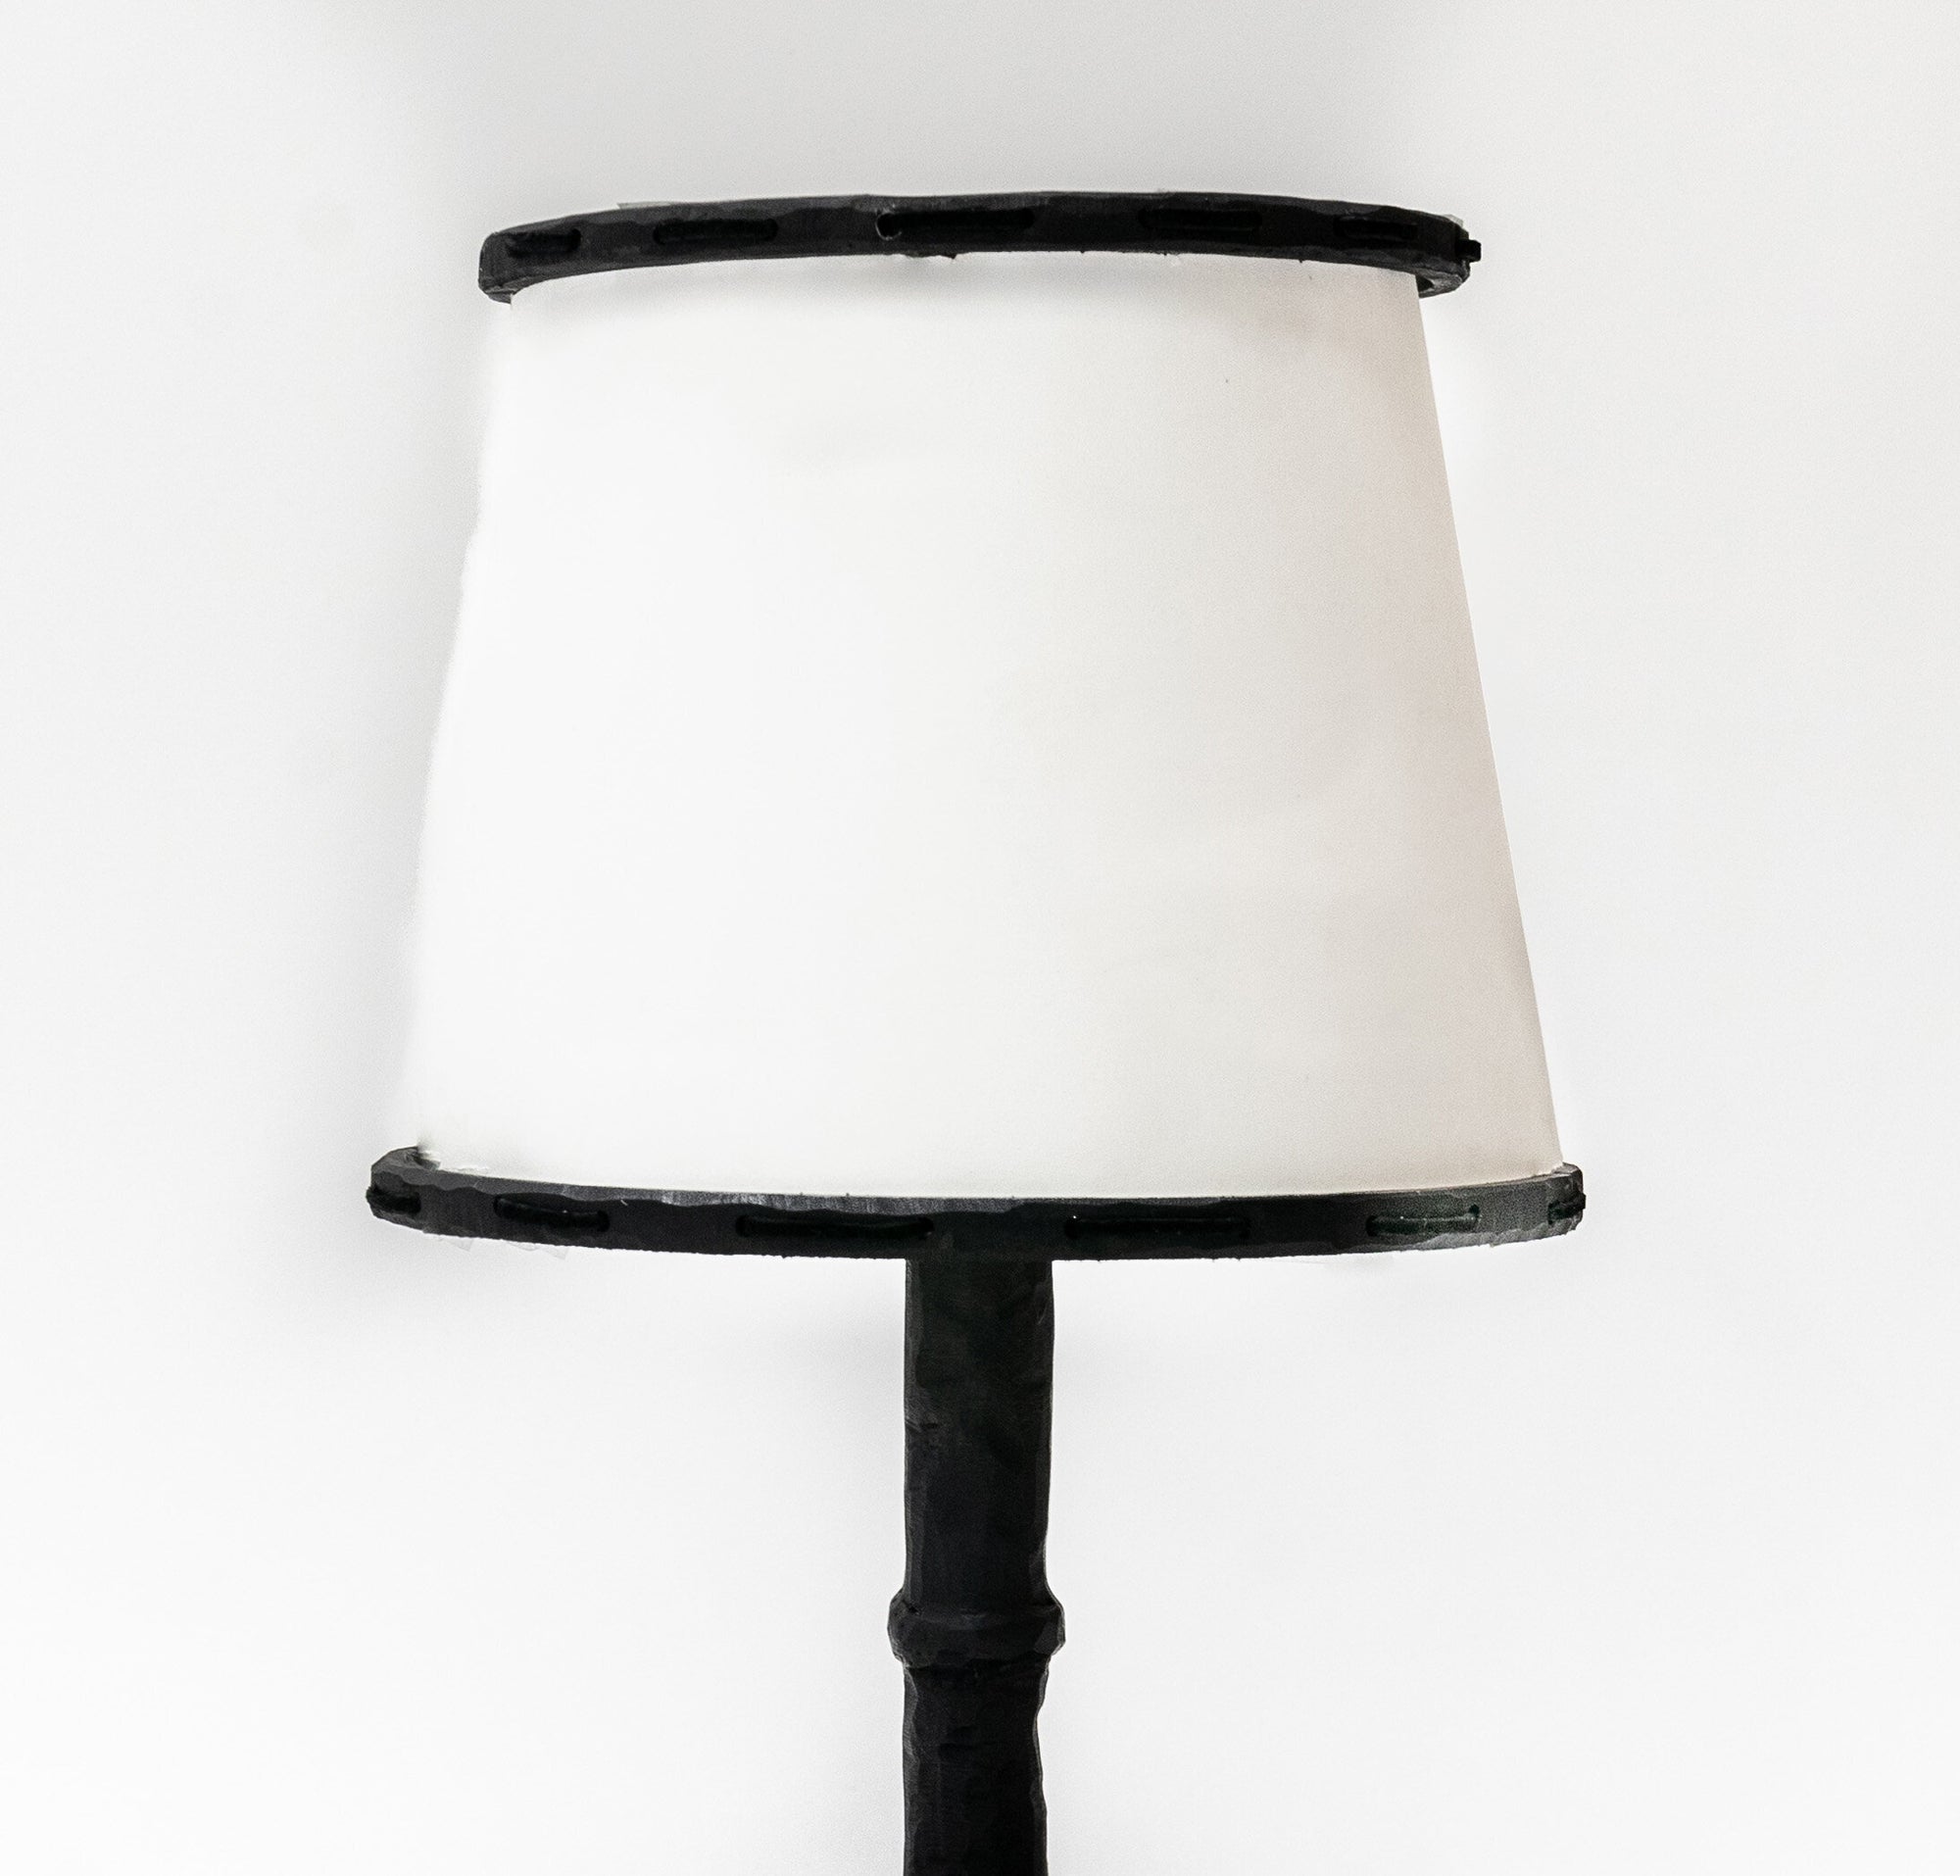 LAMP NO. 4